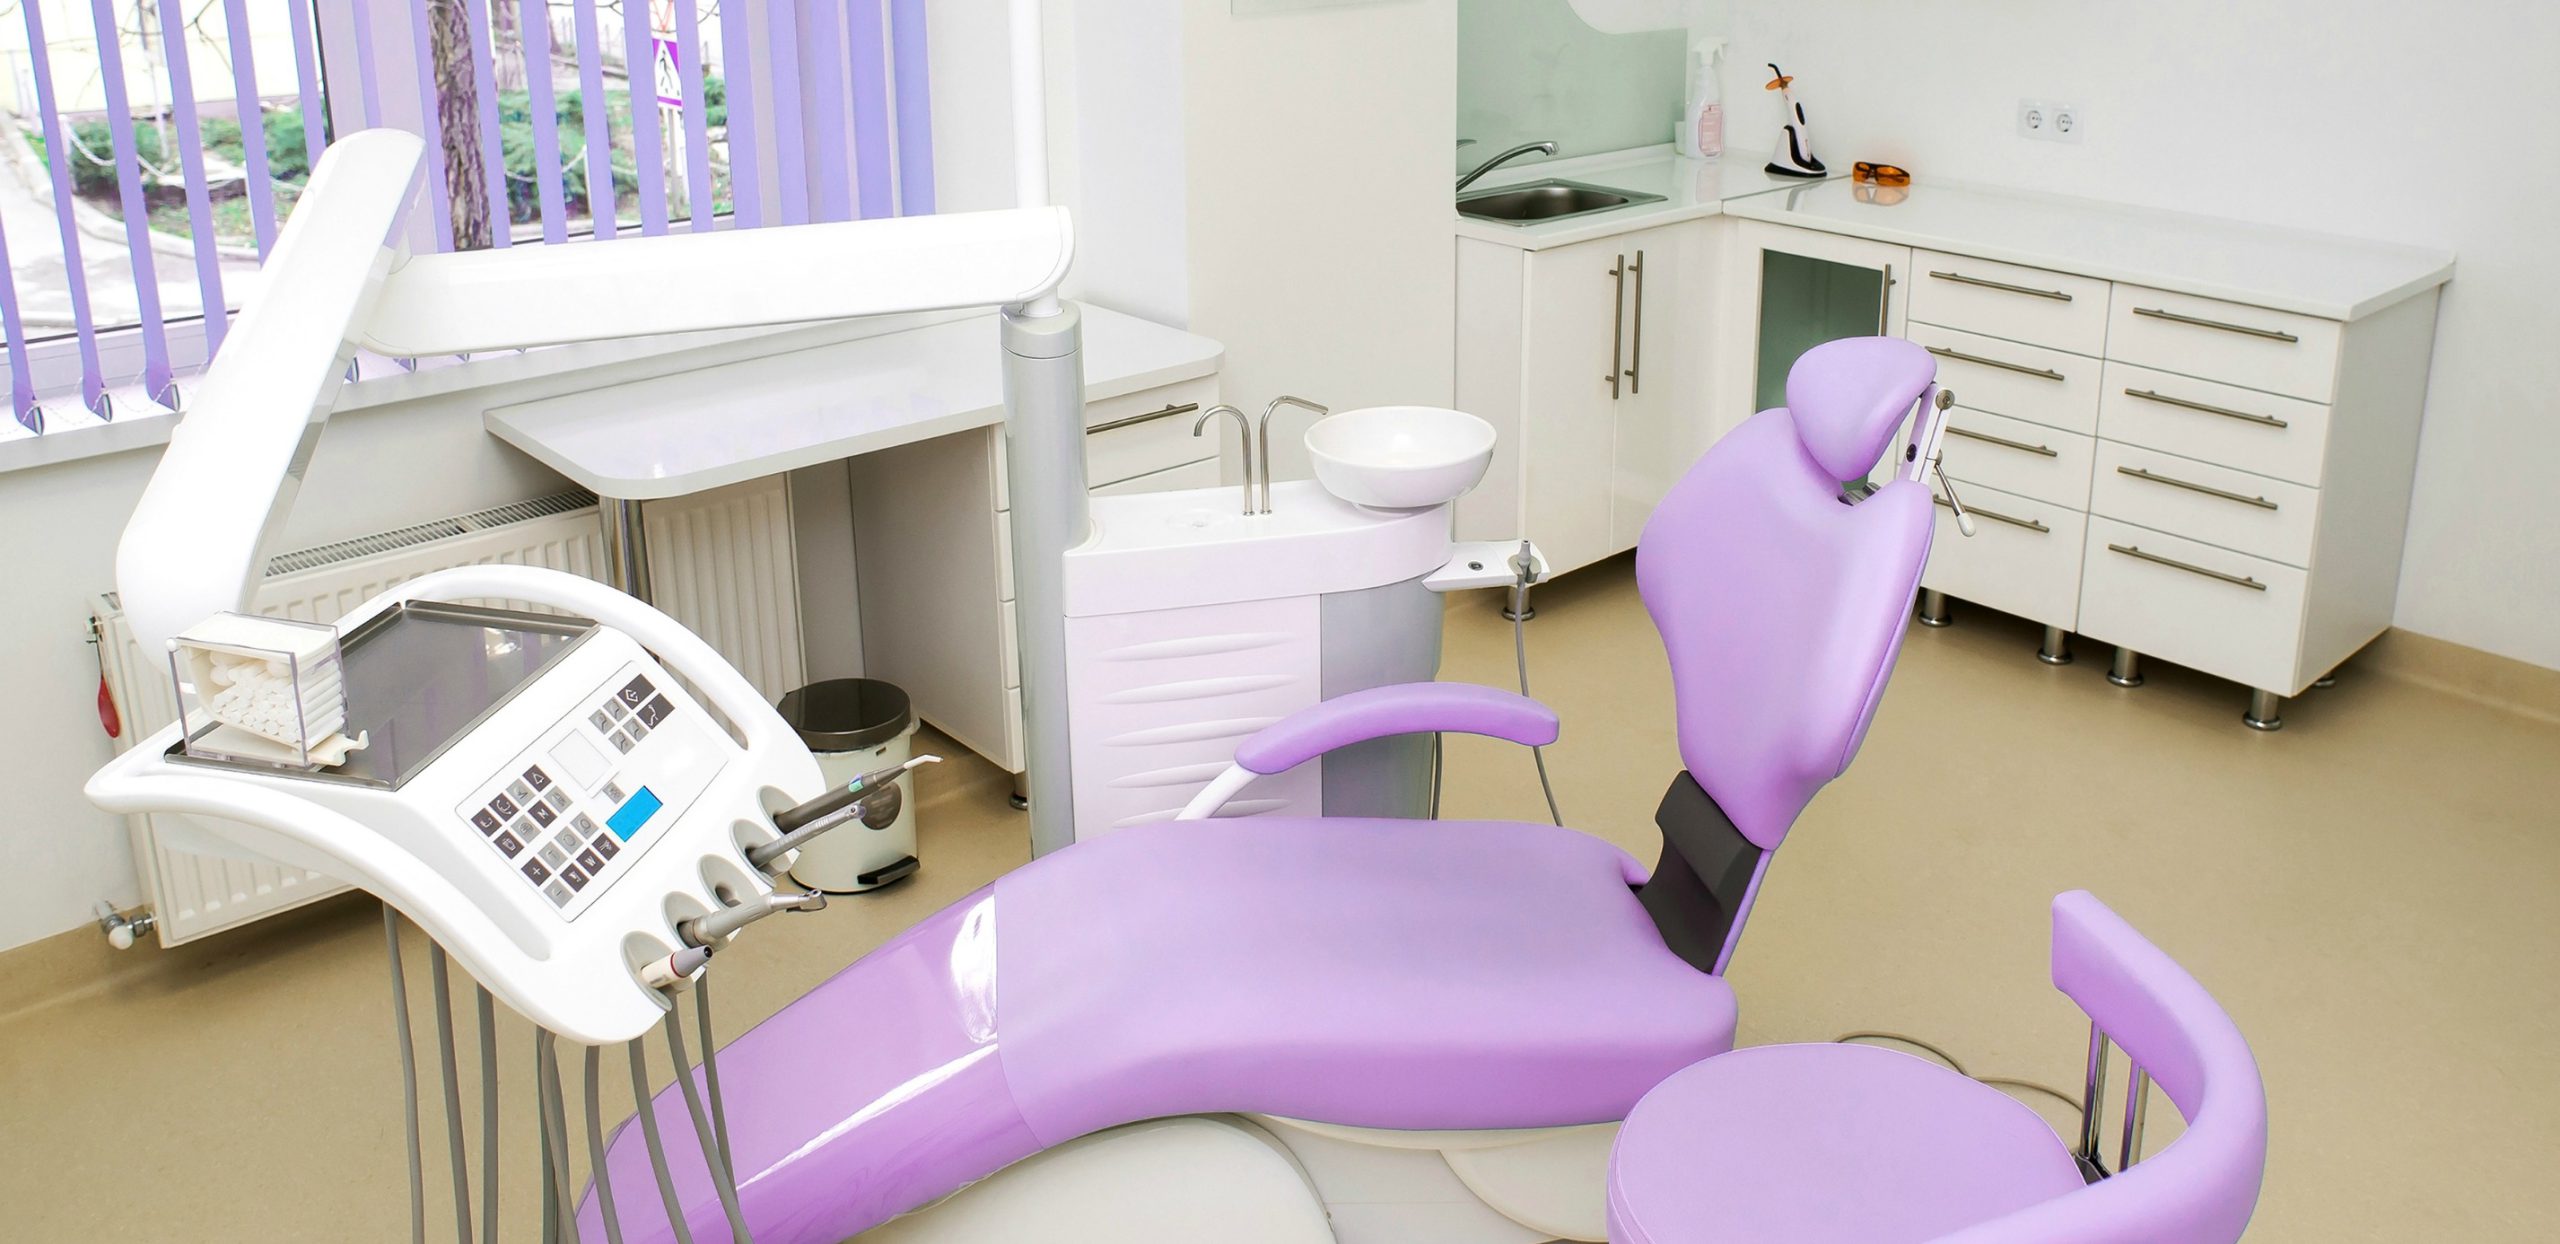 ایده طراحی داخلی مطب دندانپزشکی